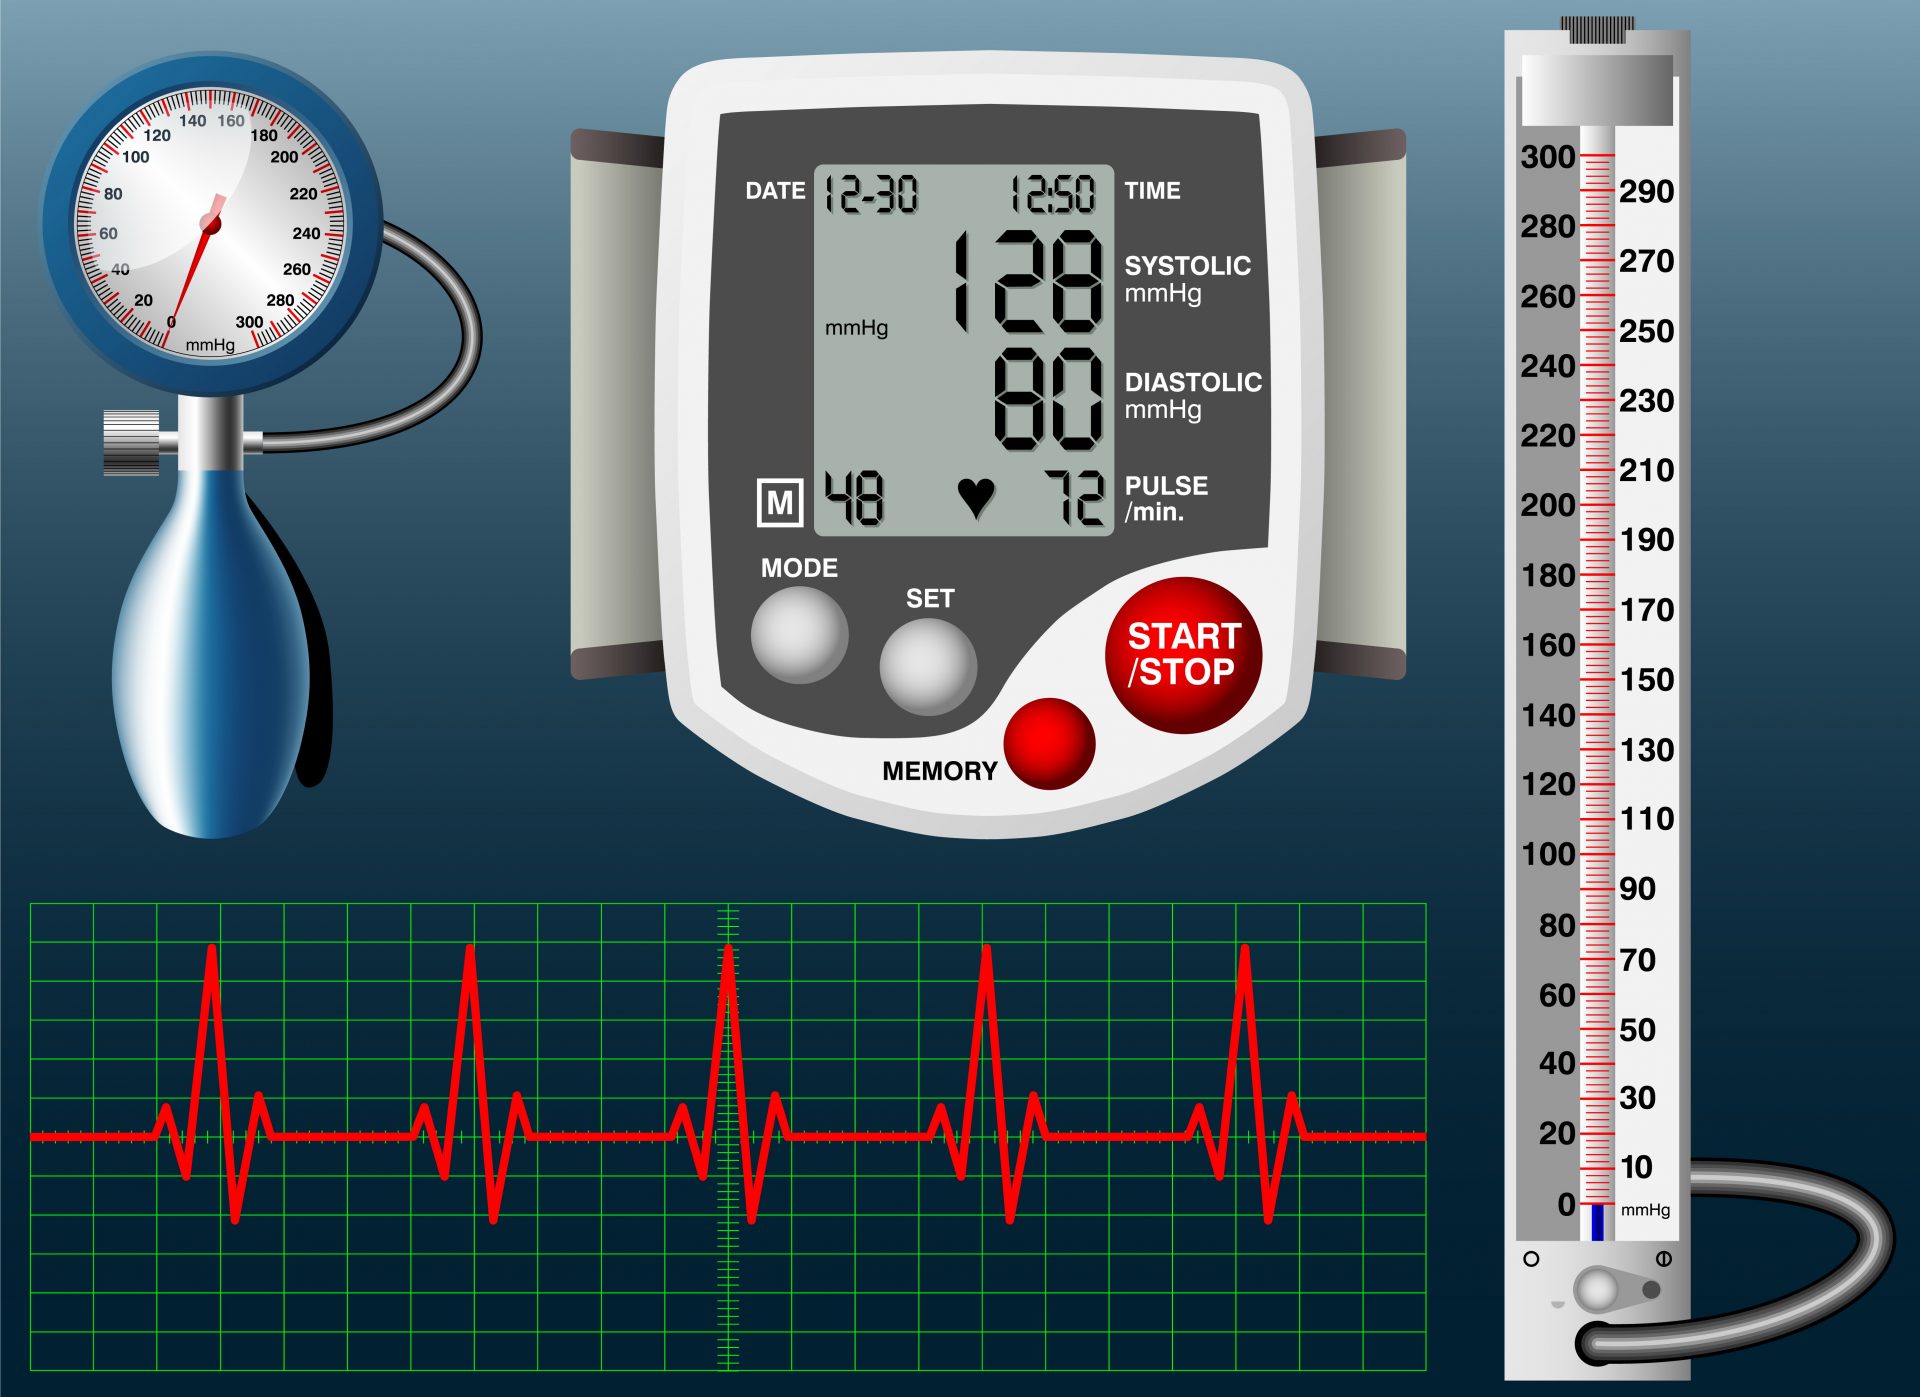 vrijednosti tlaka kod odraslih hipertenzija, vazokonstrikcije